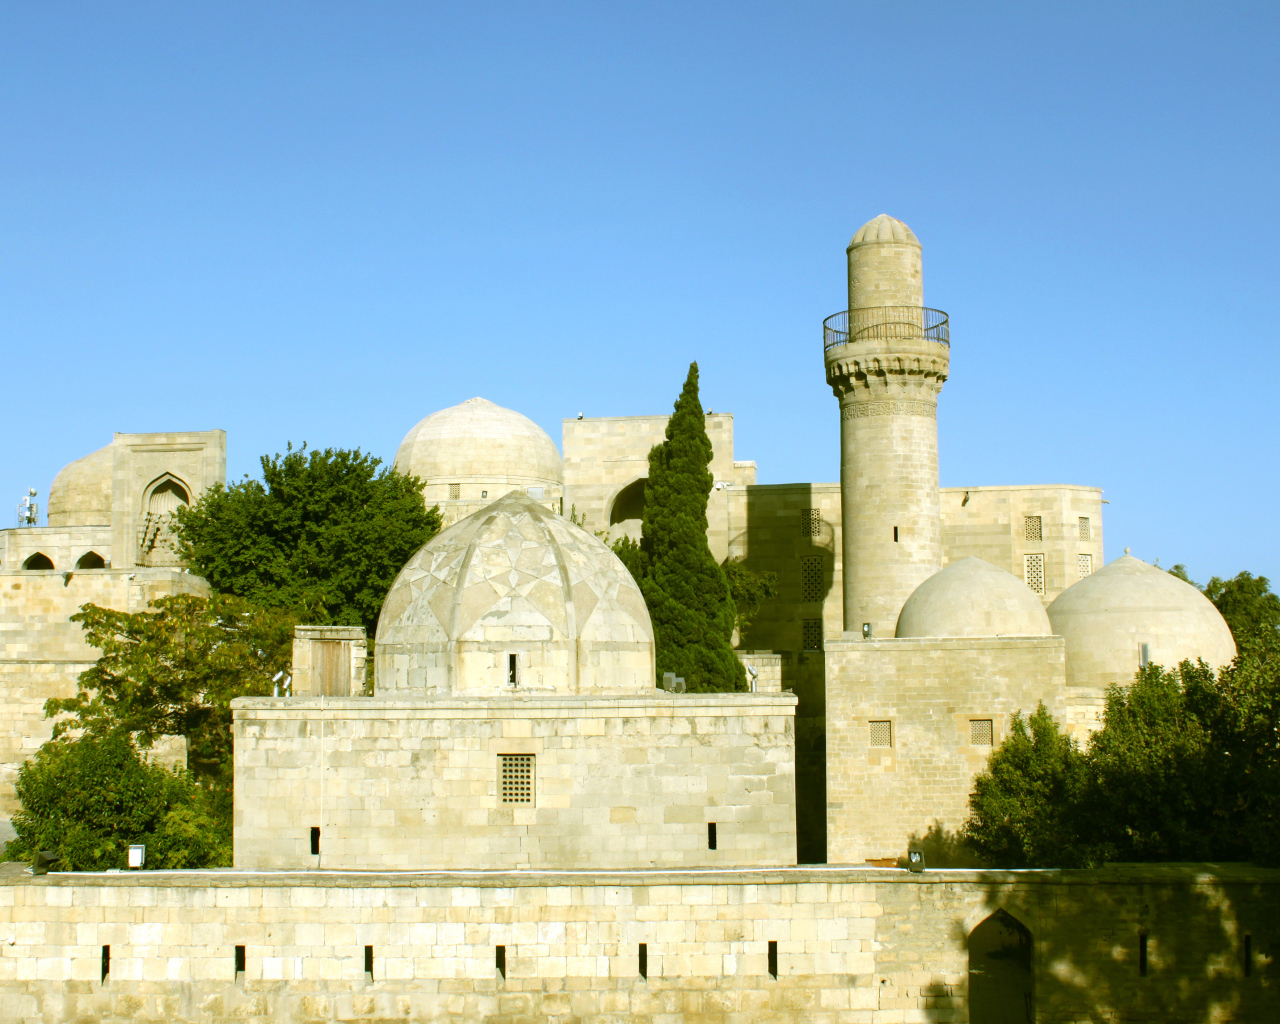 Старинный дворец Ширваншахов  Баку 